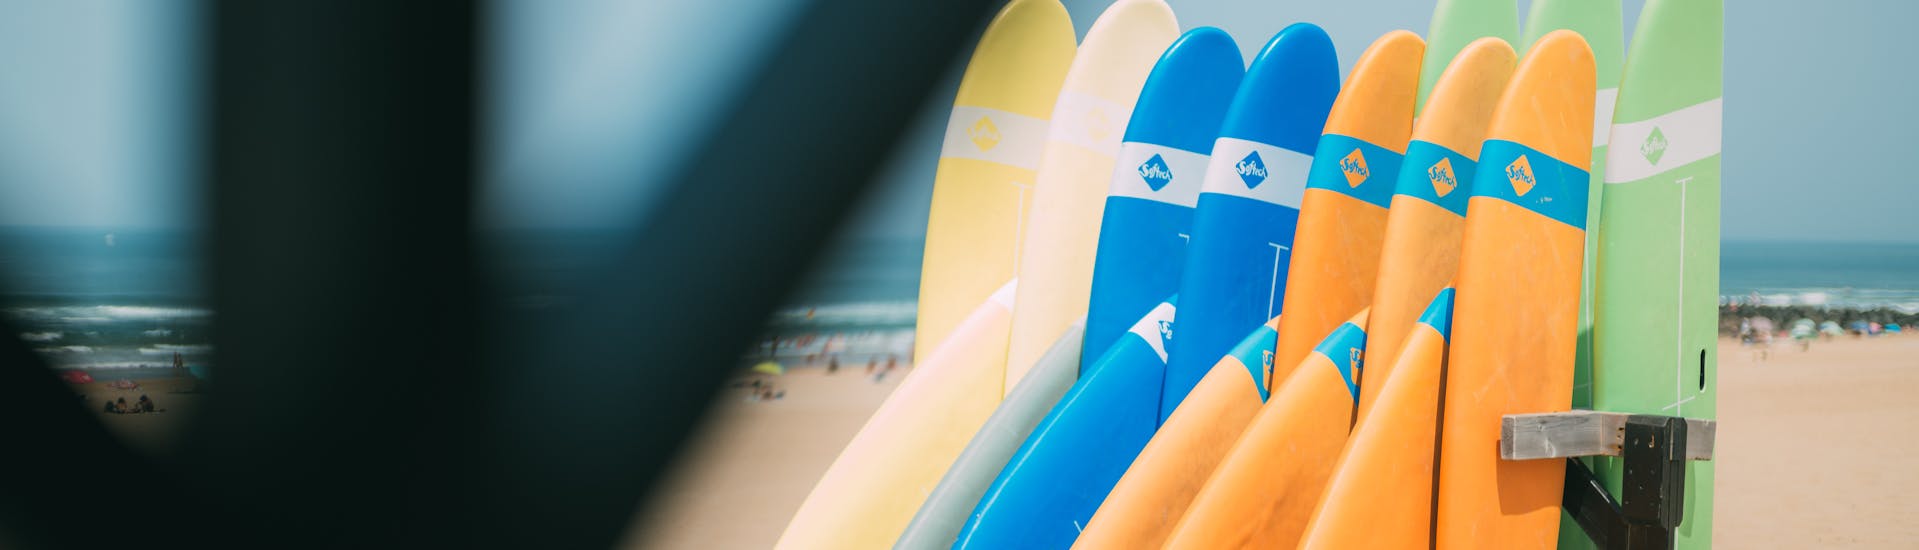 Clases privadas de surf (desde 6 años) en Playa Marinella con ESCf Anglet